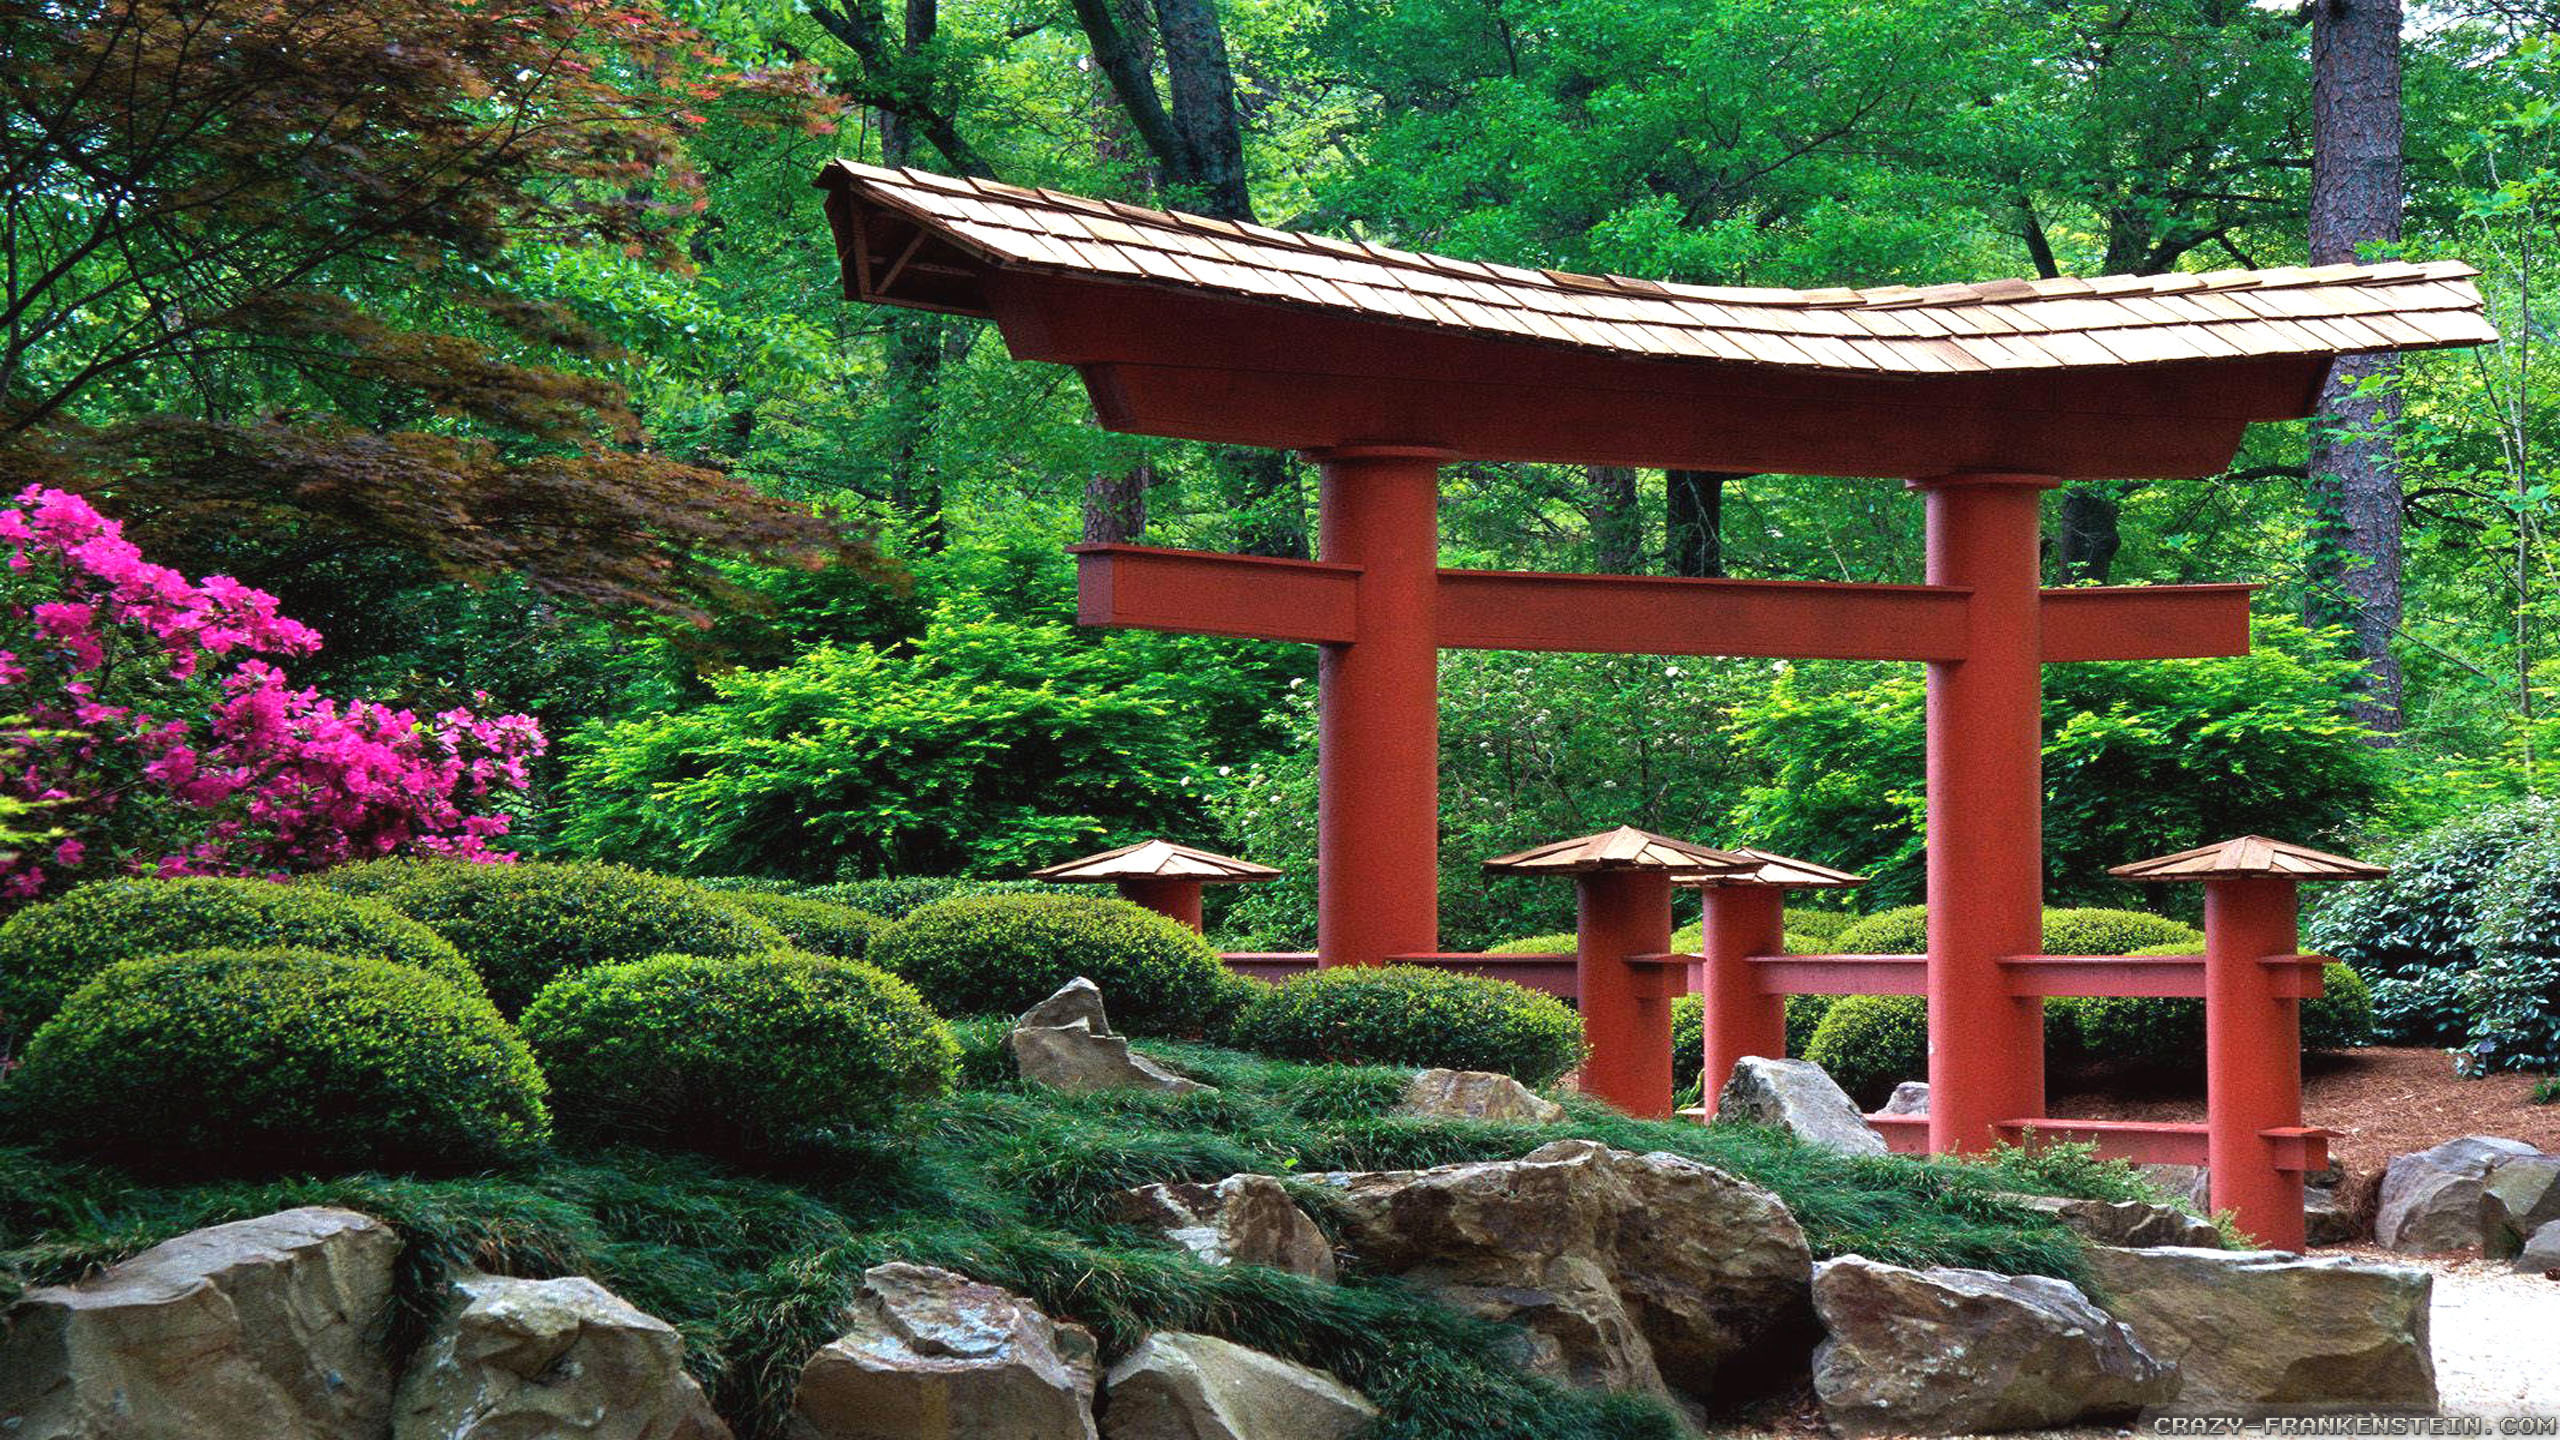 Забронировать столик в японском саду. Древнекитайский ландшафтный сад. Киотский Ботанический сад в Японии. Японский сад синтоизм.